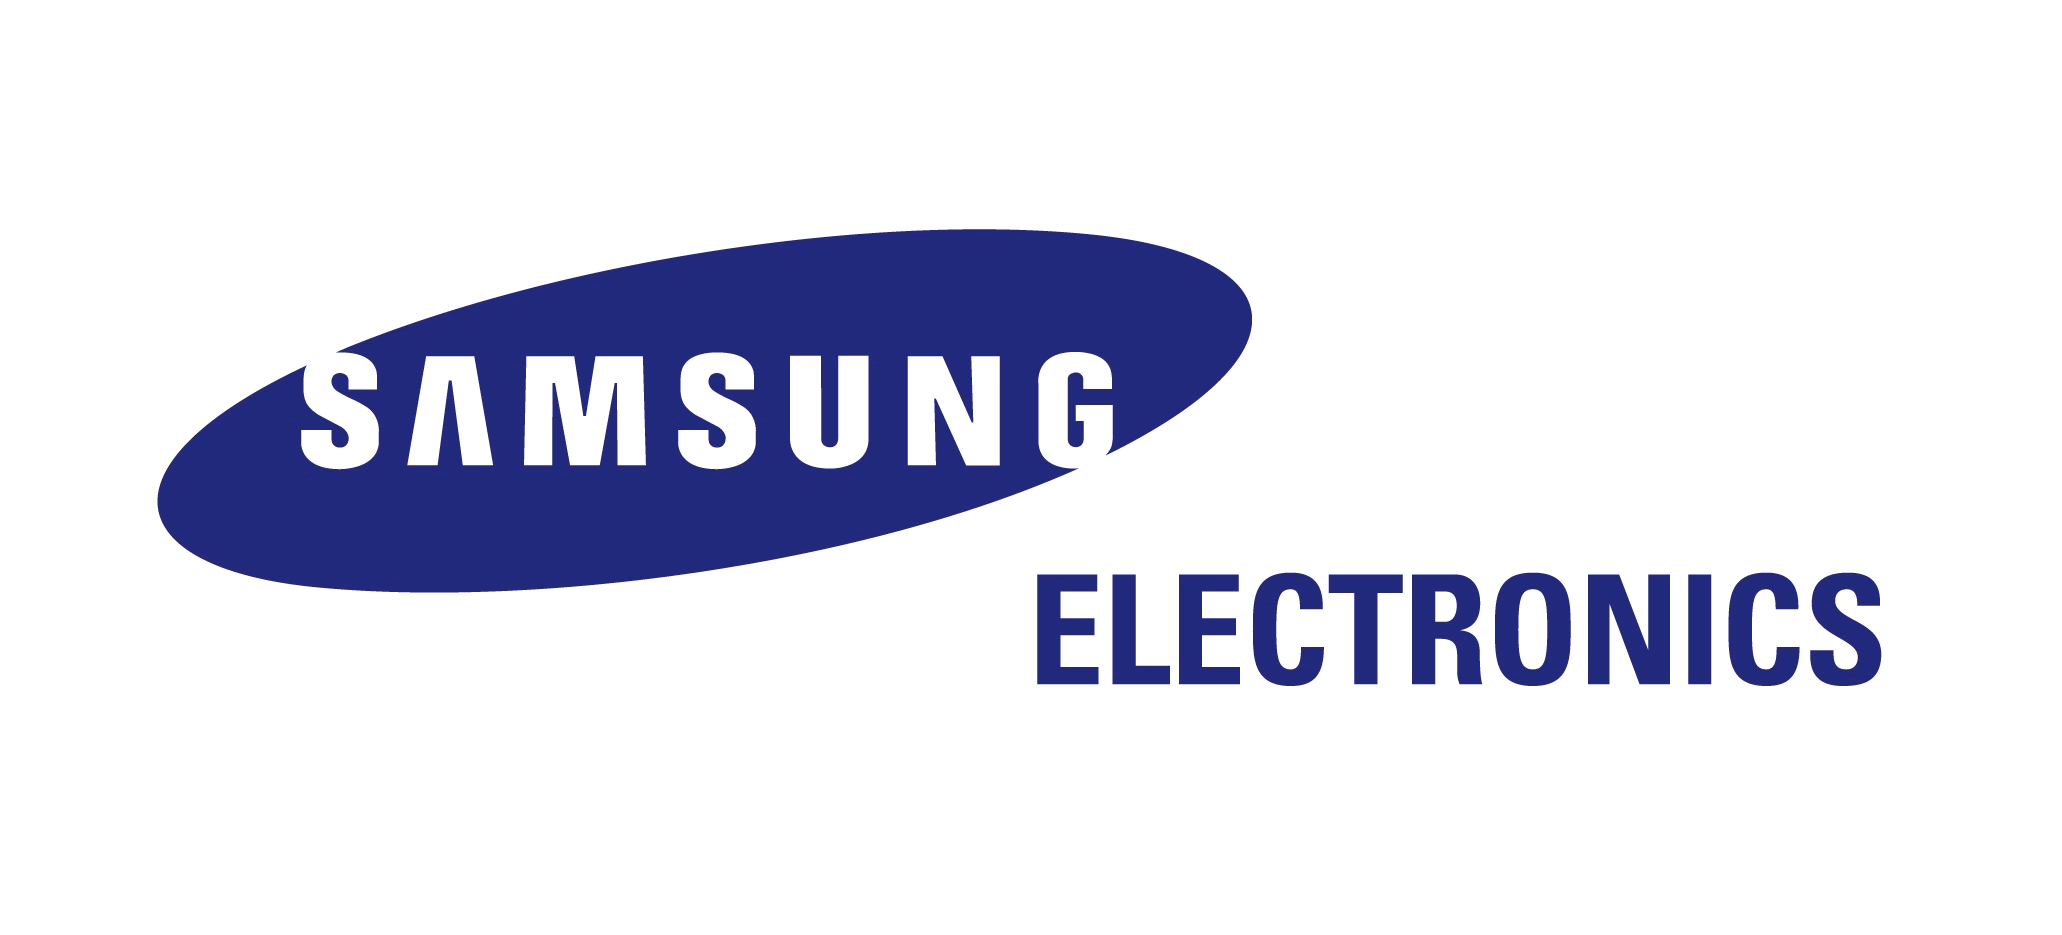 Компания Samsung Electronics преподнесла новое направление в развитии СКУД